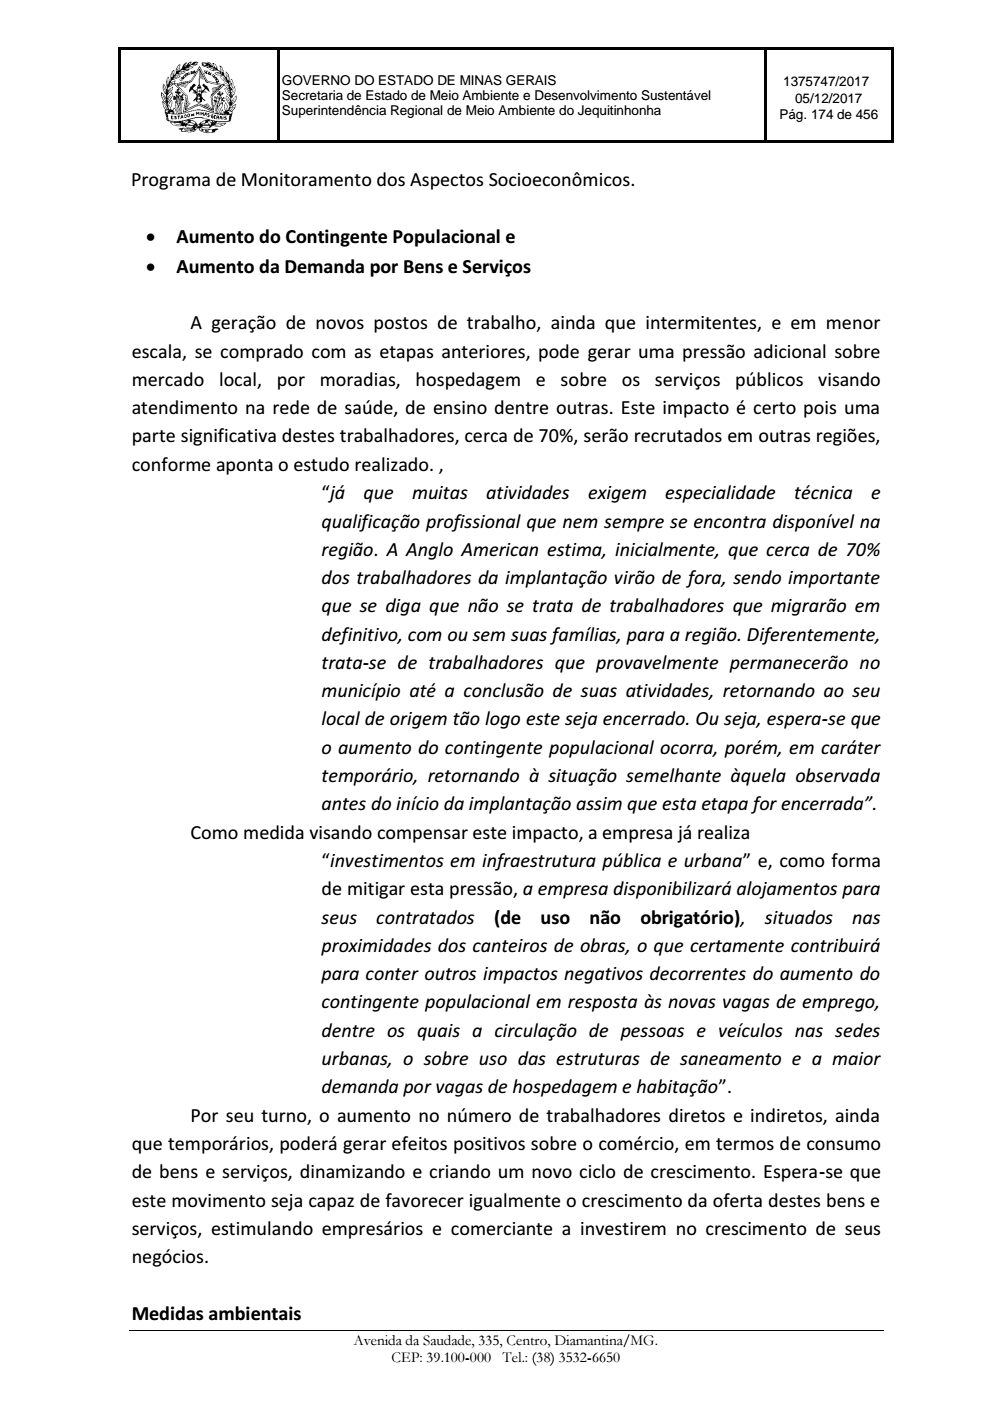 Page 174 from Parecer único da Secretaria de estado de Meio Ambiente e Desenvolvimento Sustentável (SEMAD)